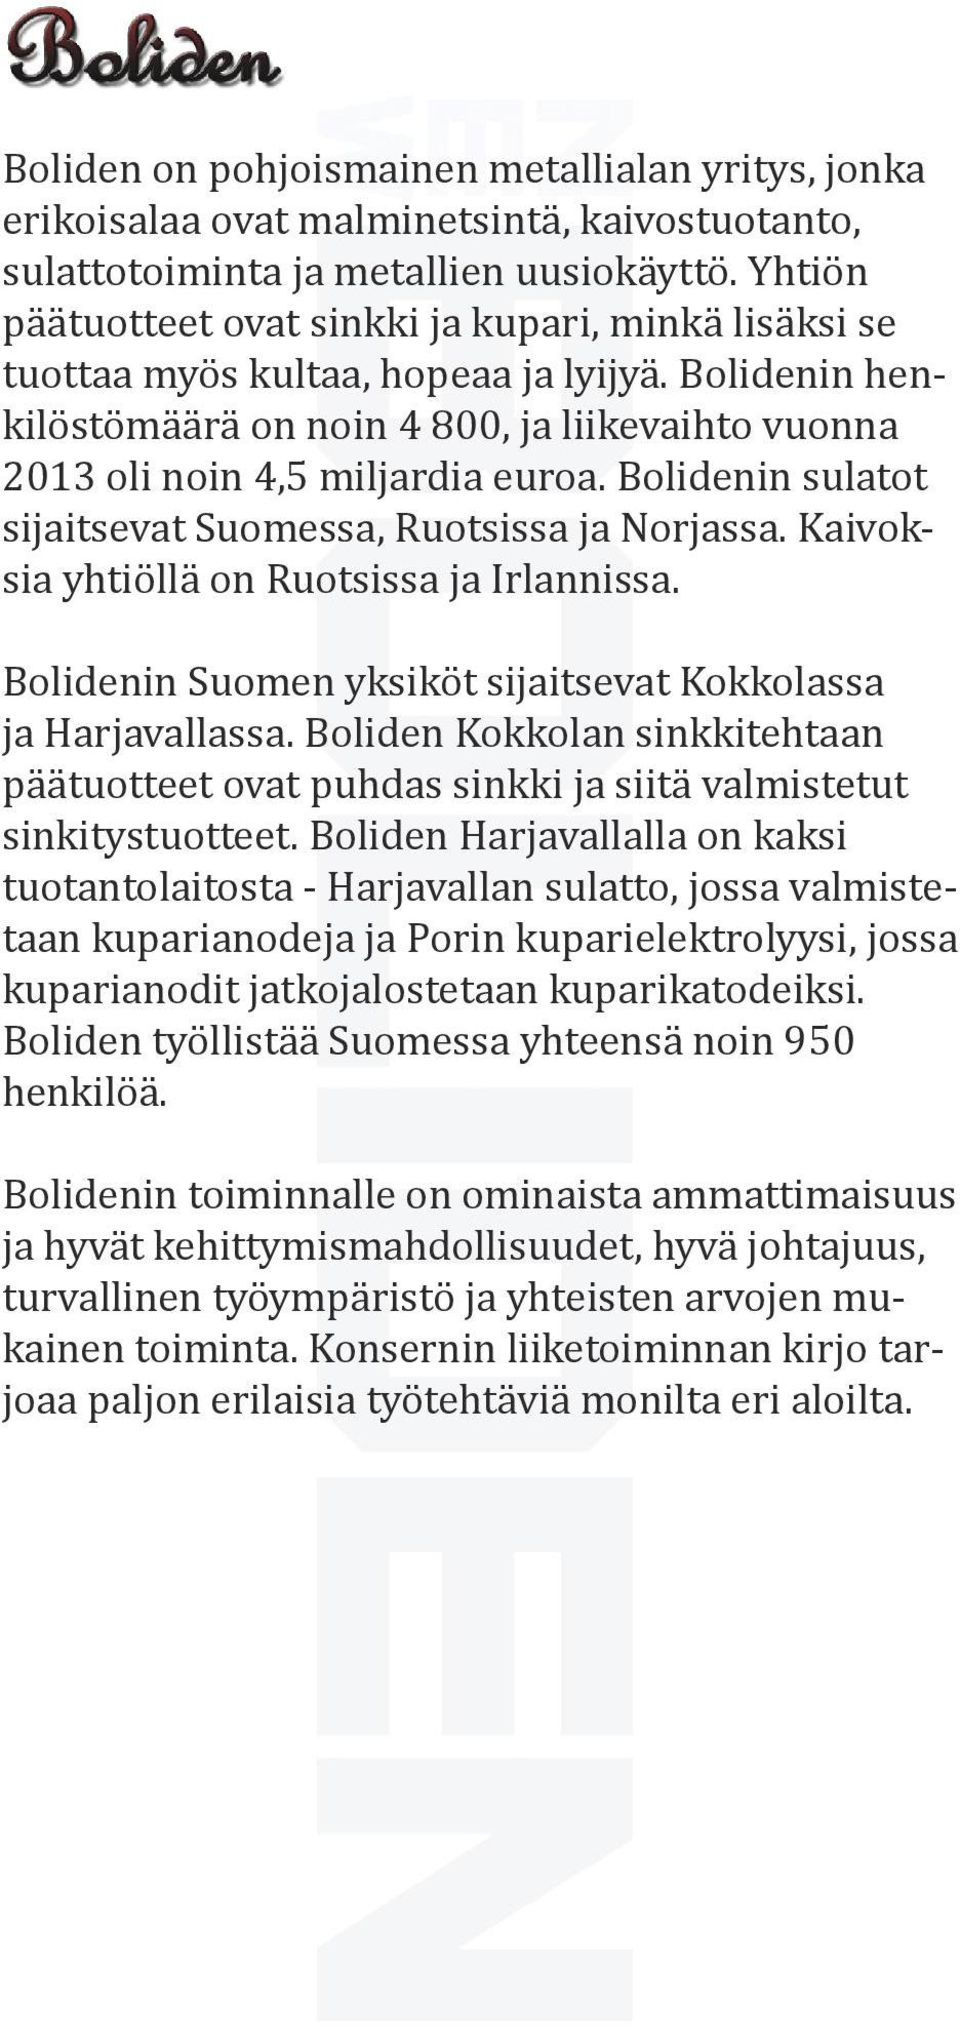 Bolidenin sulatot sijaitsevat Suomessa, Ruotsissa ja Norjassa. Kaivoksia yhtiöllä on Ruotsissa ja Irlannissa. Bolidenin Suomen yksiköt sijaitsevat Kokkolassa ja Harjavallassa.